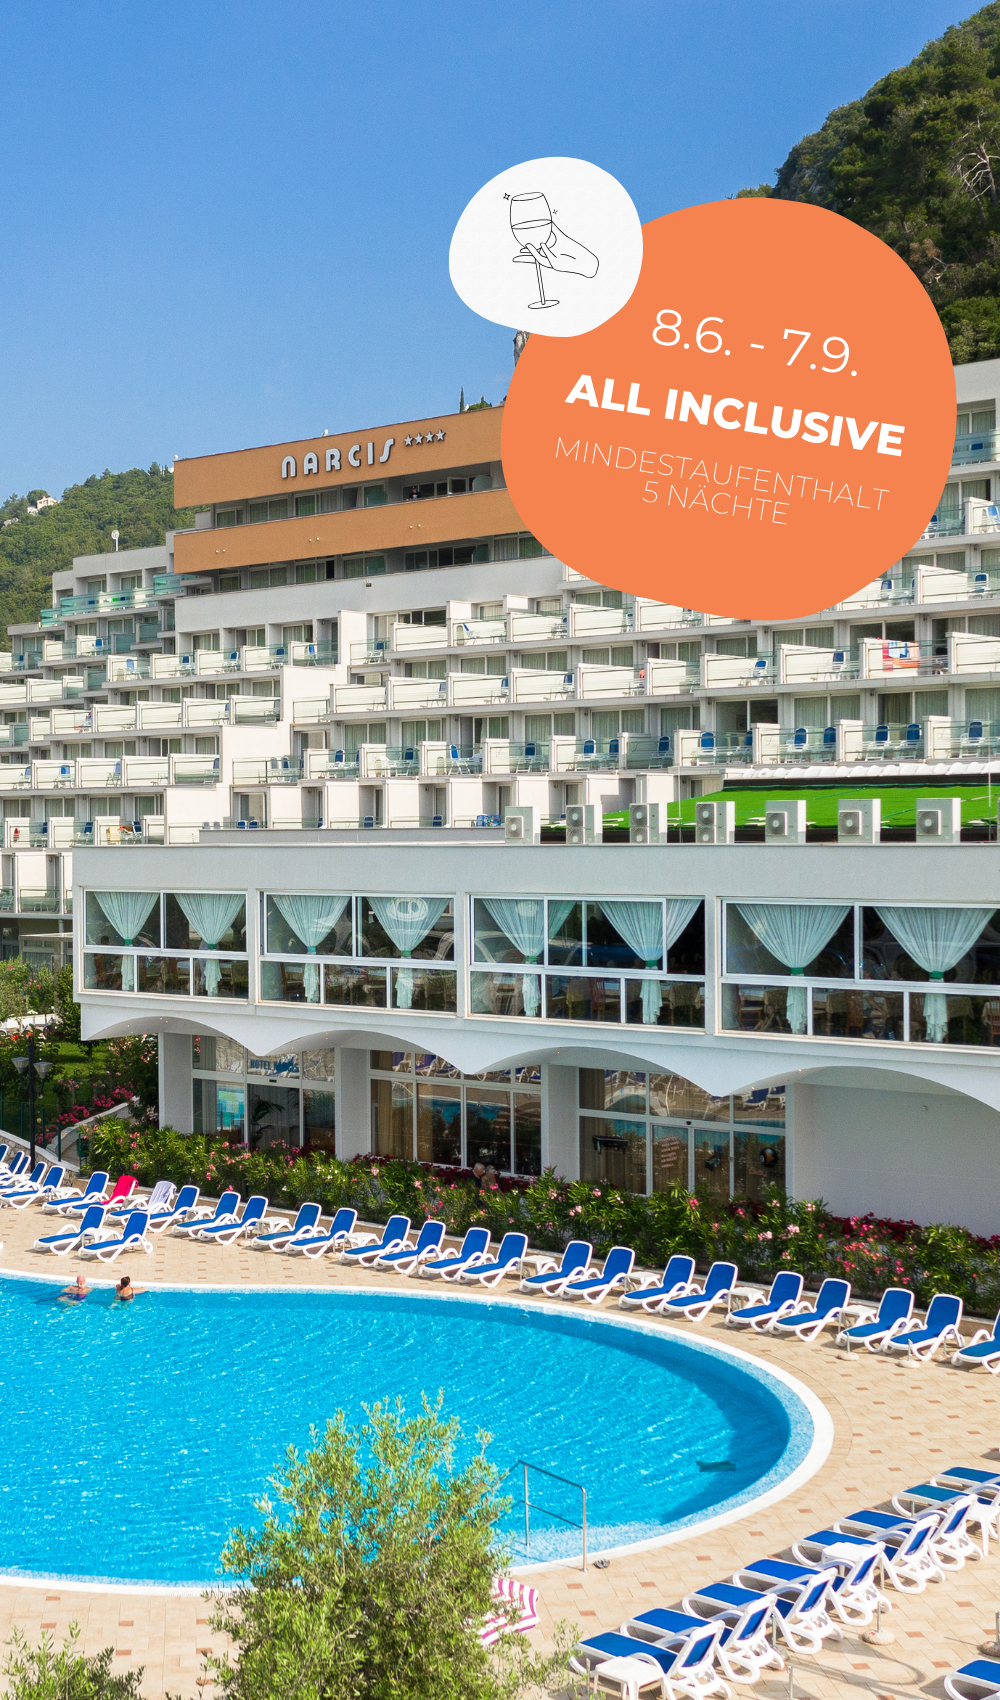 Das Hotel Narcis befindet sich in Rabac, nur 5 Gehminuten vom Strand entfernt, und bietet ein All-Inclusive-Angebot für einen Familien-, Aktiv- oder Sporturlaub.